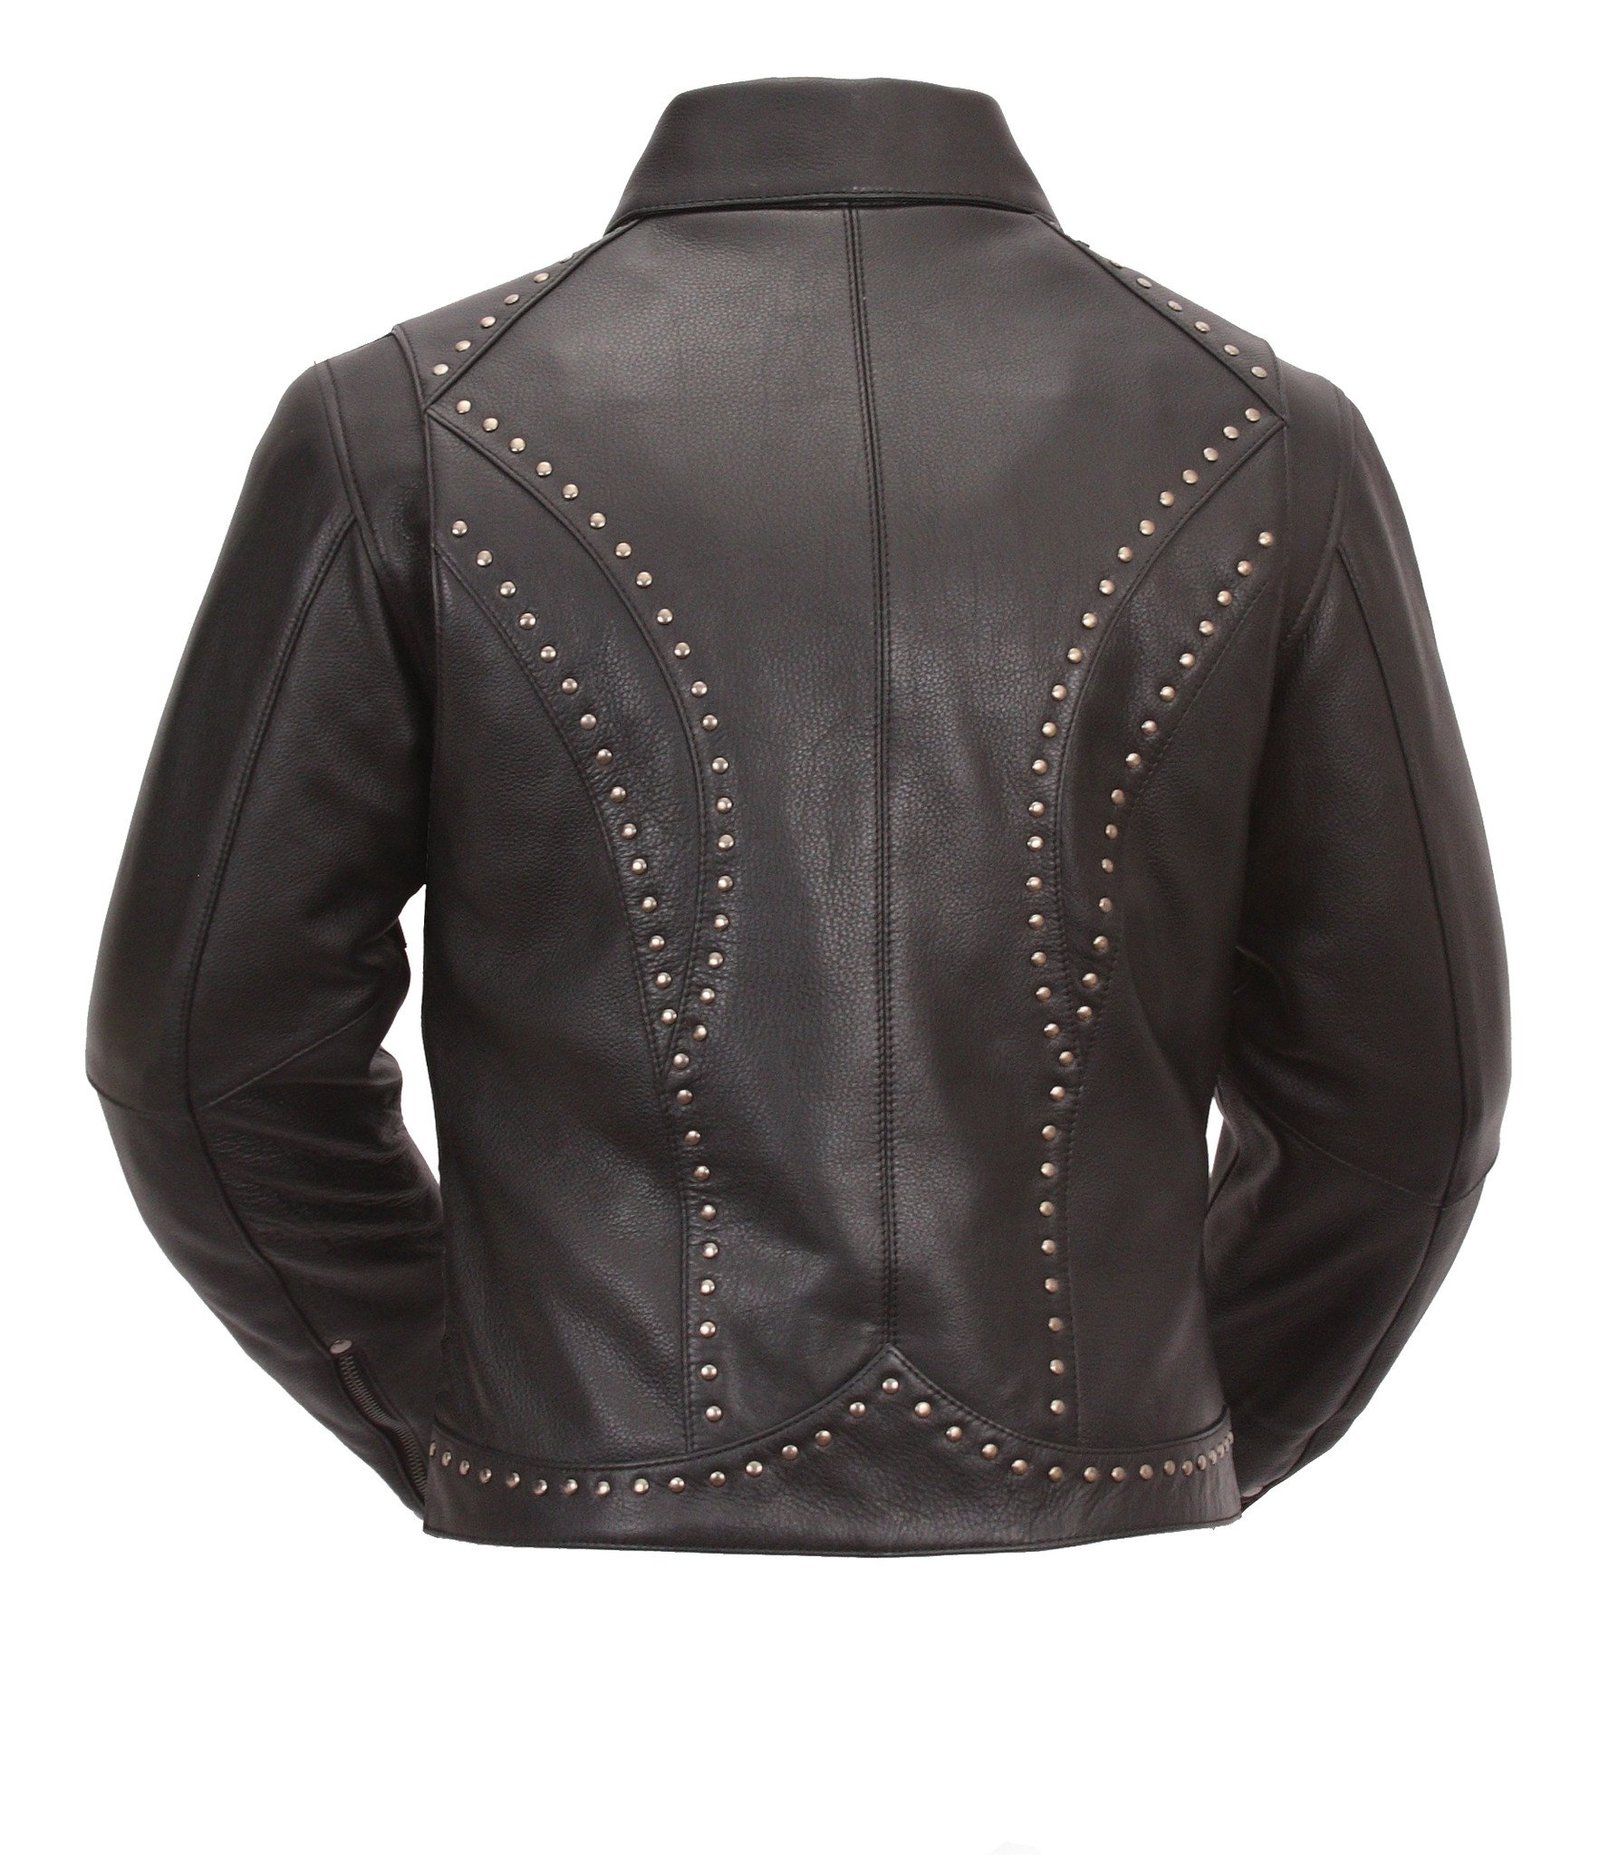 Scarlett Star - Women's Motorcycle Leather Jacket - SKU FIL159NOCZ-FM